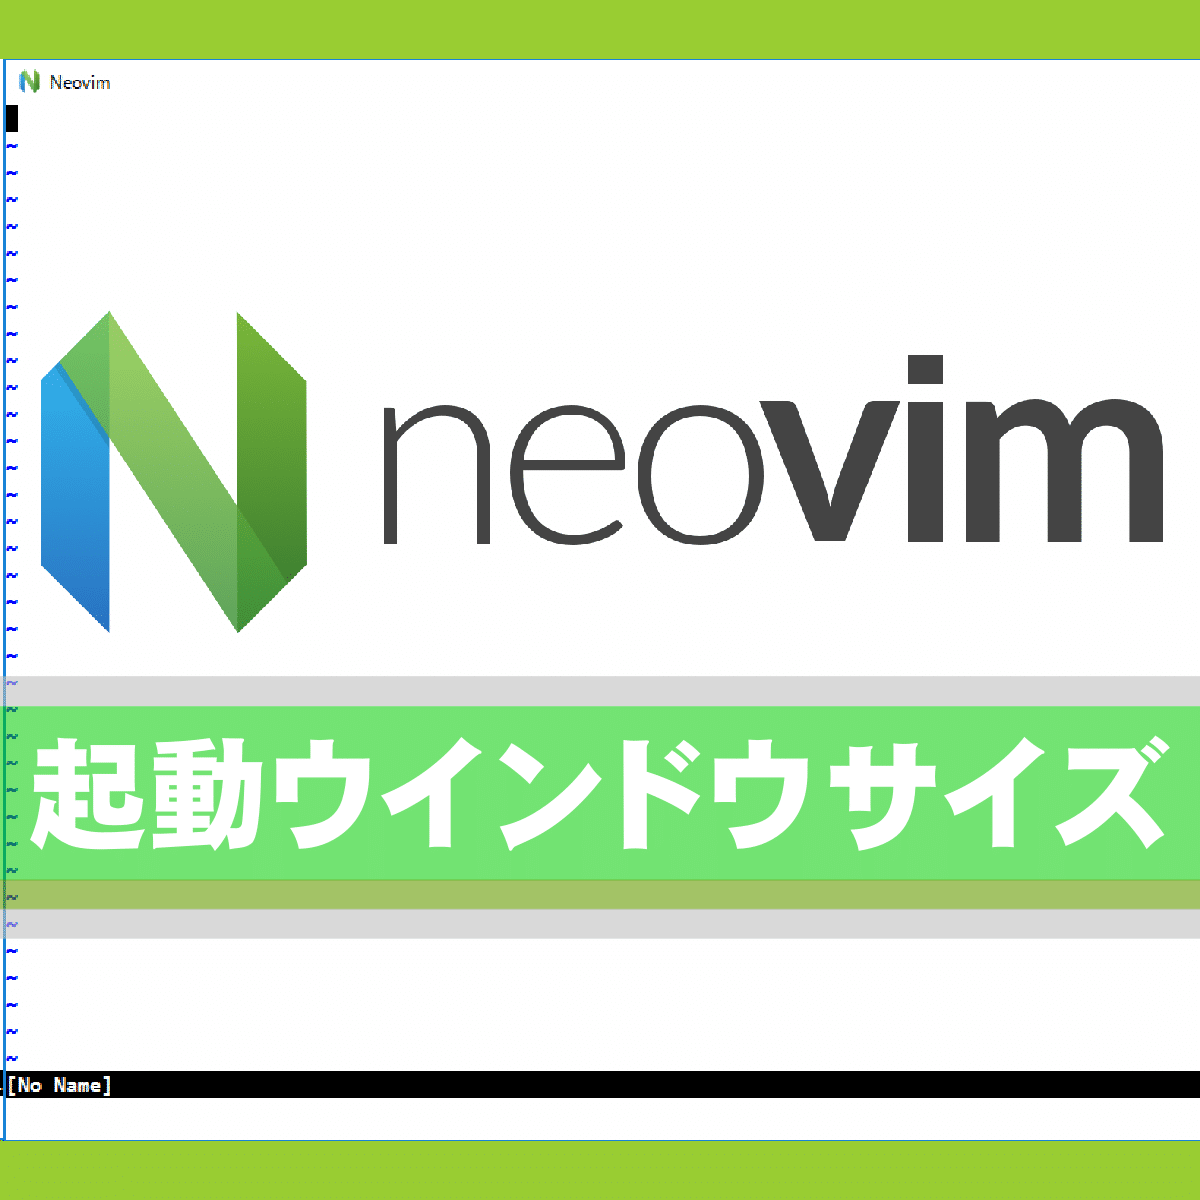 起動：Windows 10 で neovim 起動時のウインドウサイズを指定する方法は？